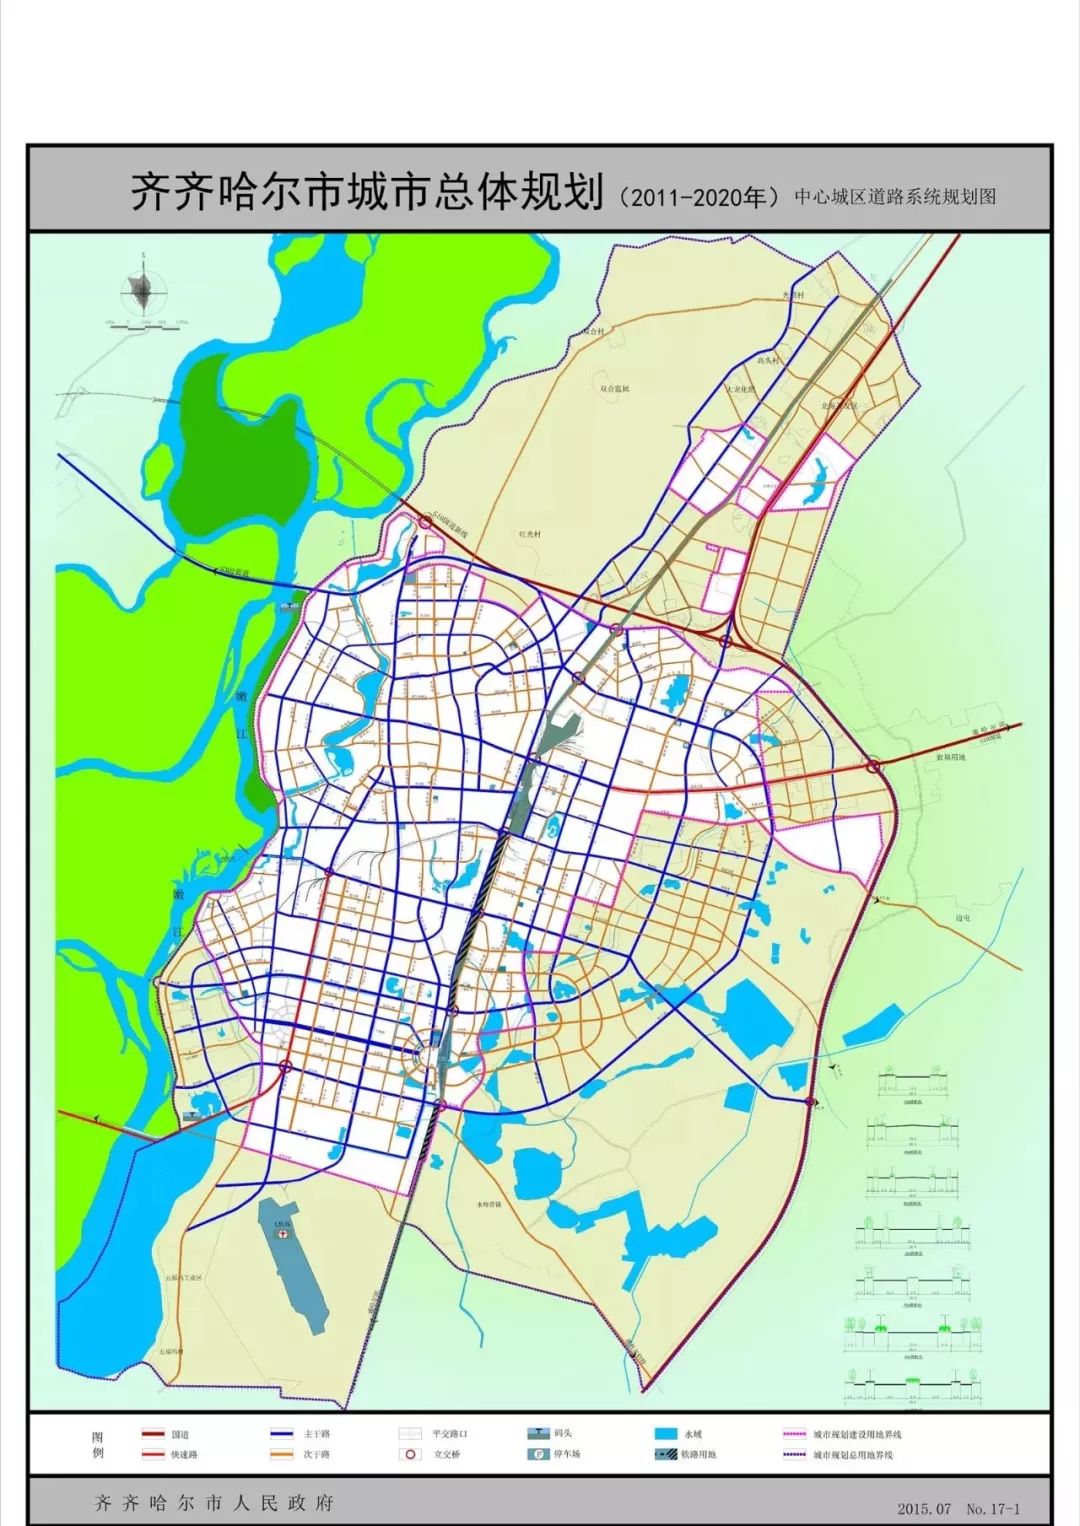 齐齐哈尔城市总体规划,看未来三年大齐腾飞!在来看看